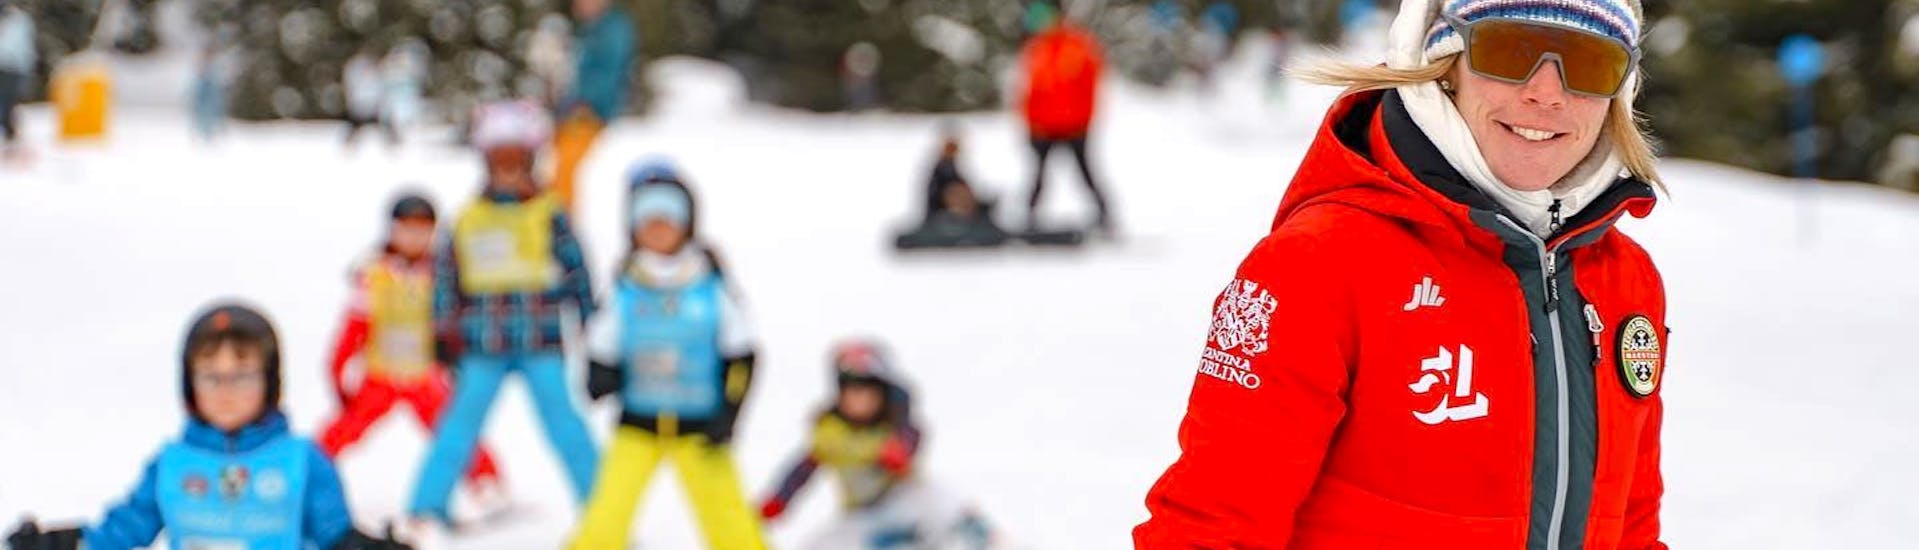 Lezioni di sci per bambini (4-13 anni) per tutti i livelli - Giornata intera.